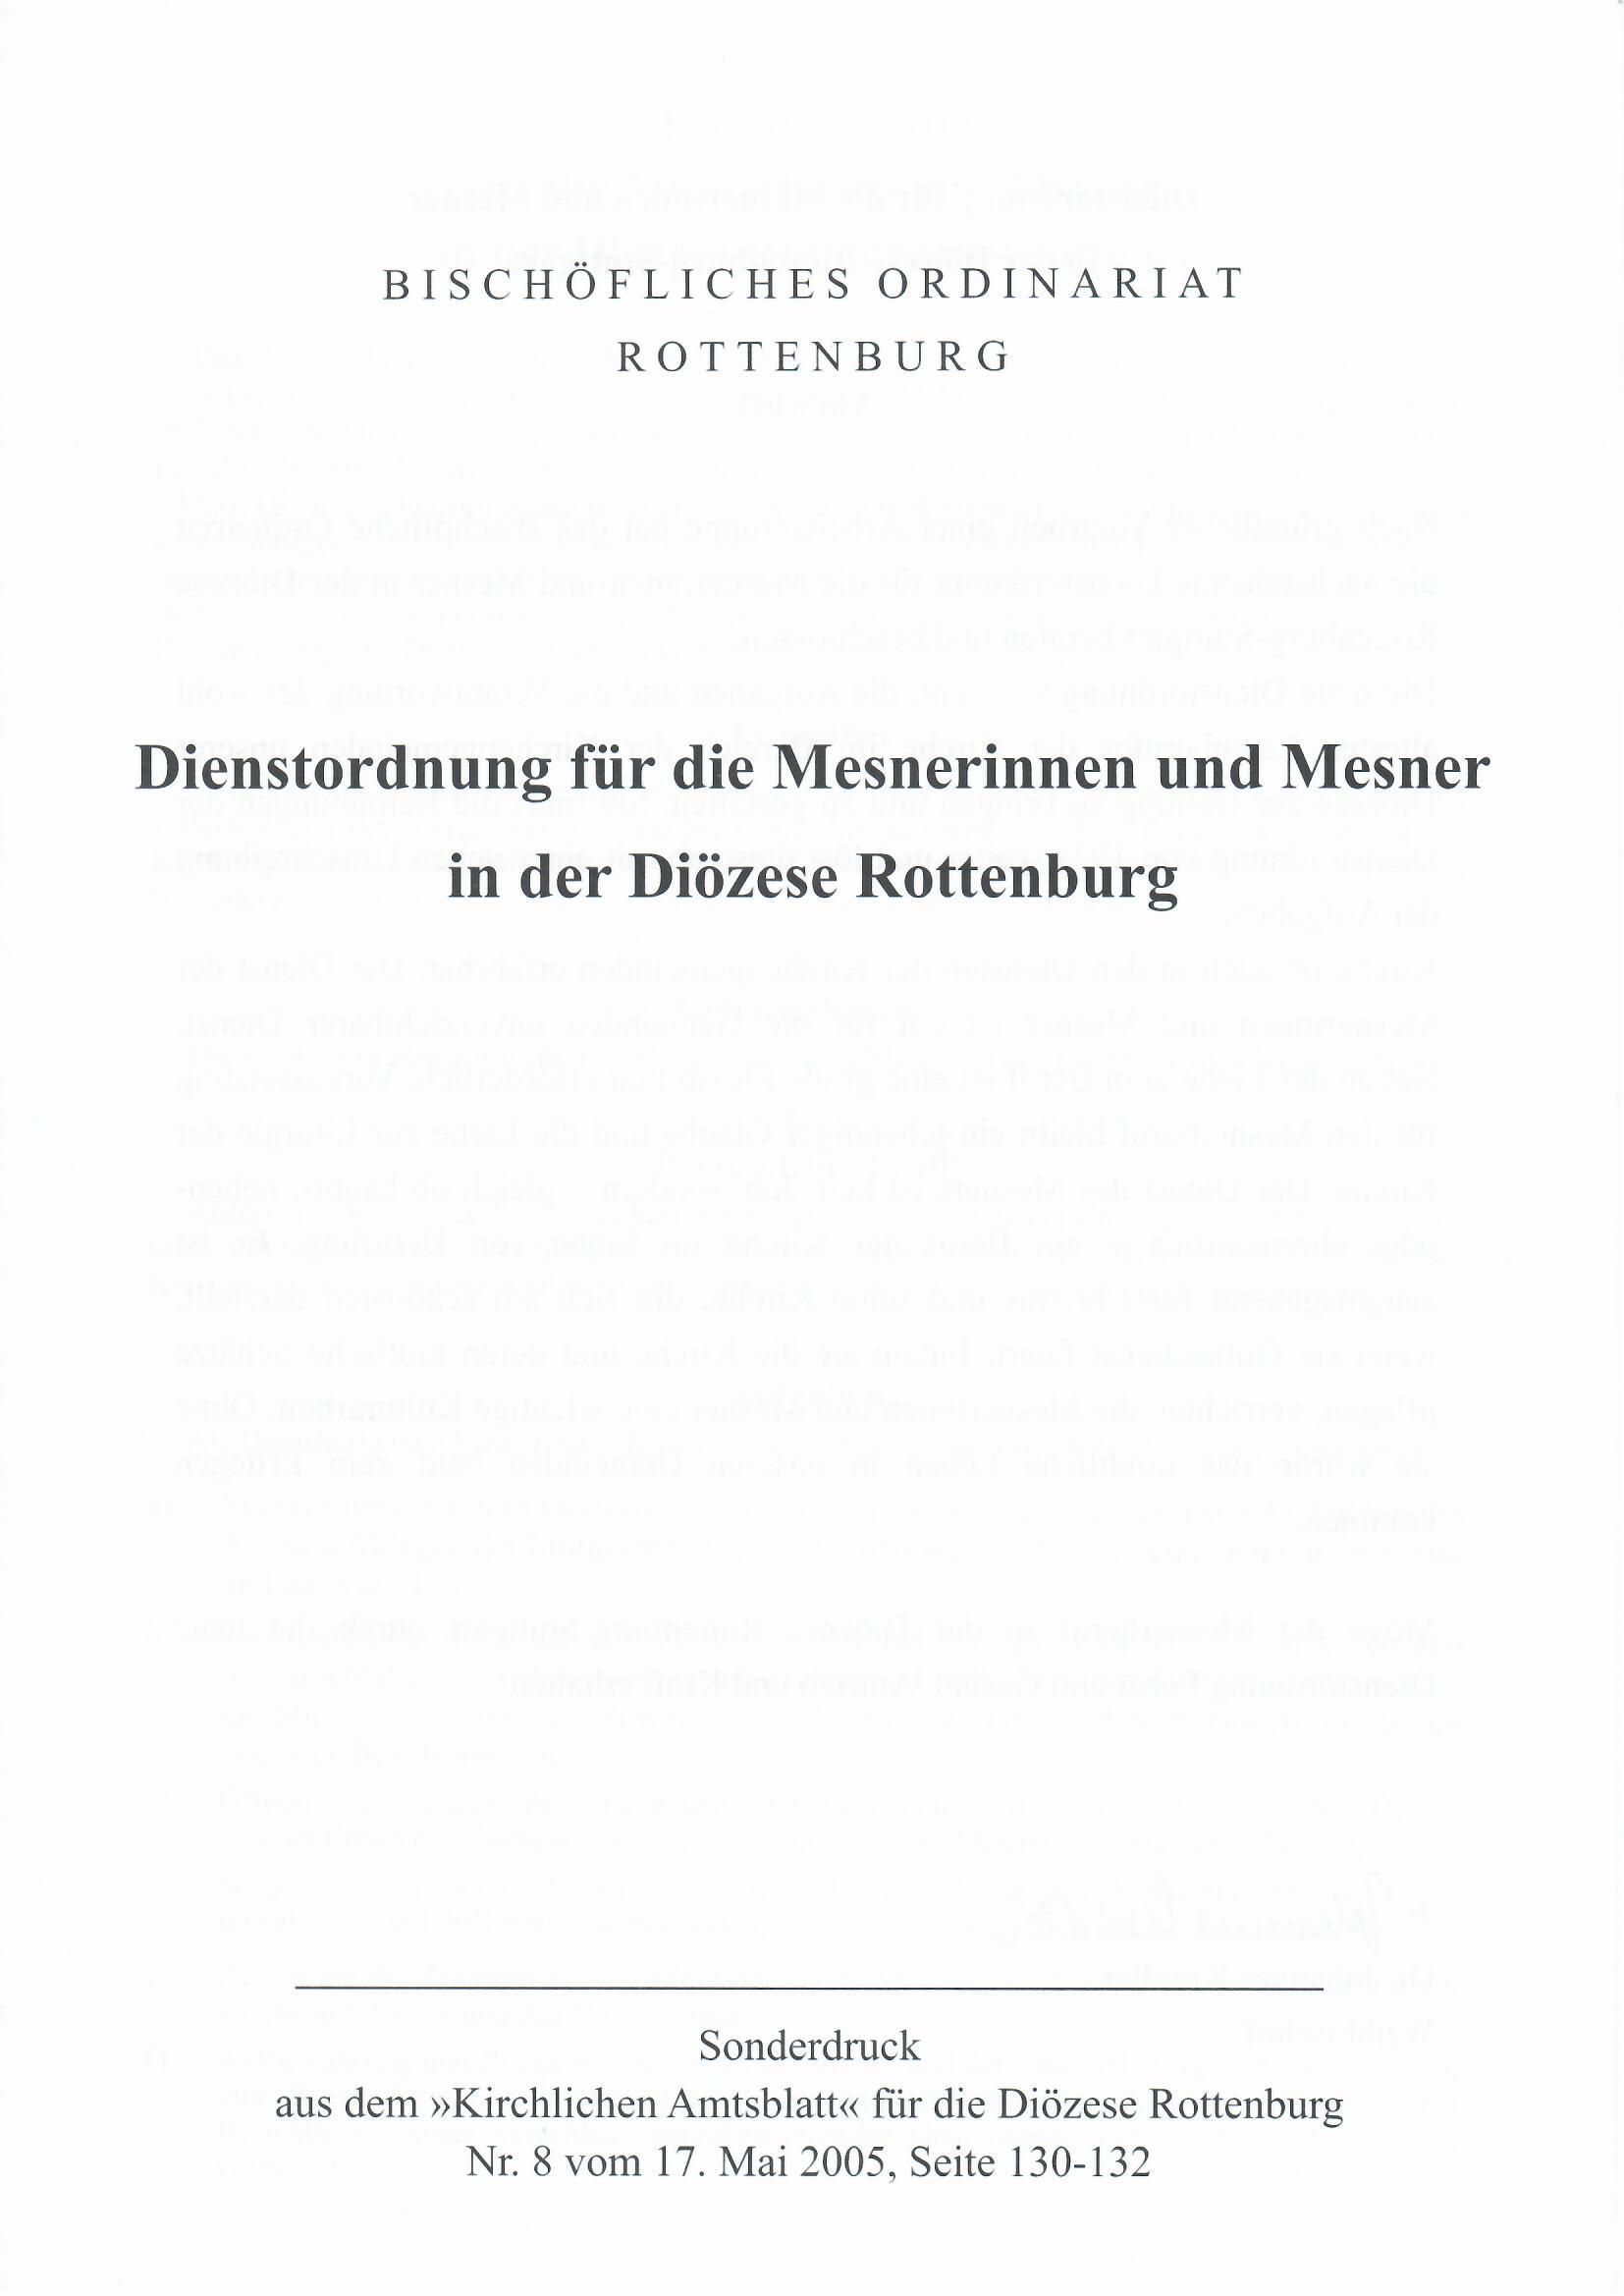 62.01 Dienstordnung für die Mesnerinnen und Mesner in der Diözese Rottenburg